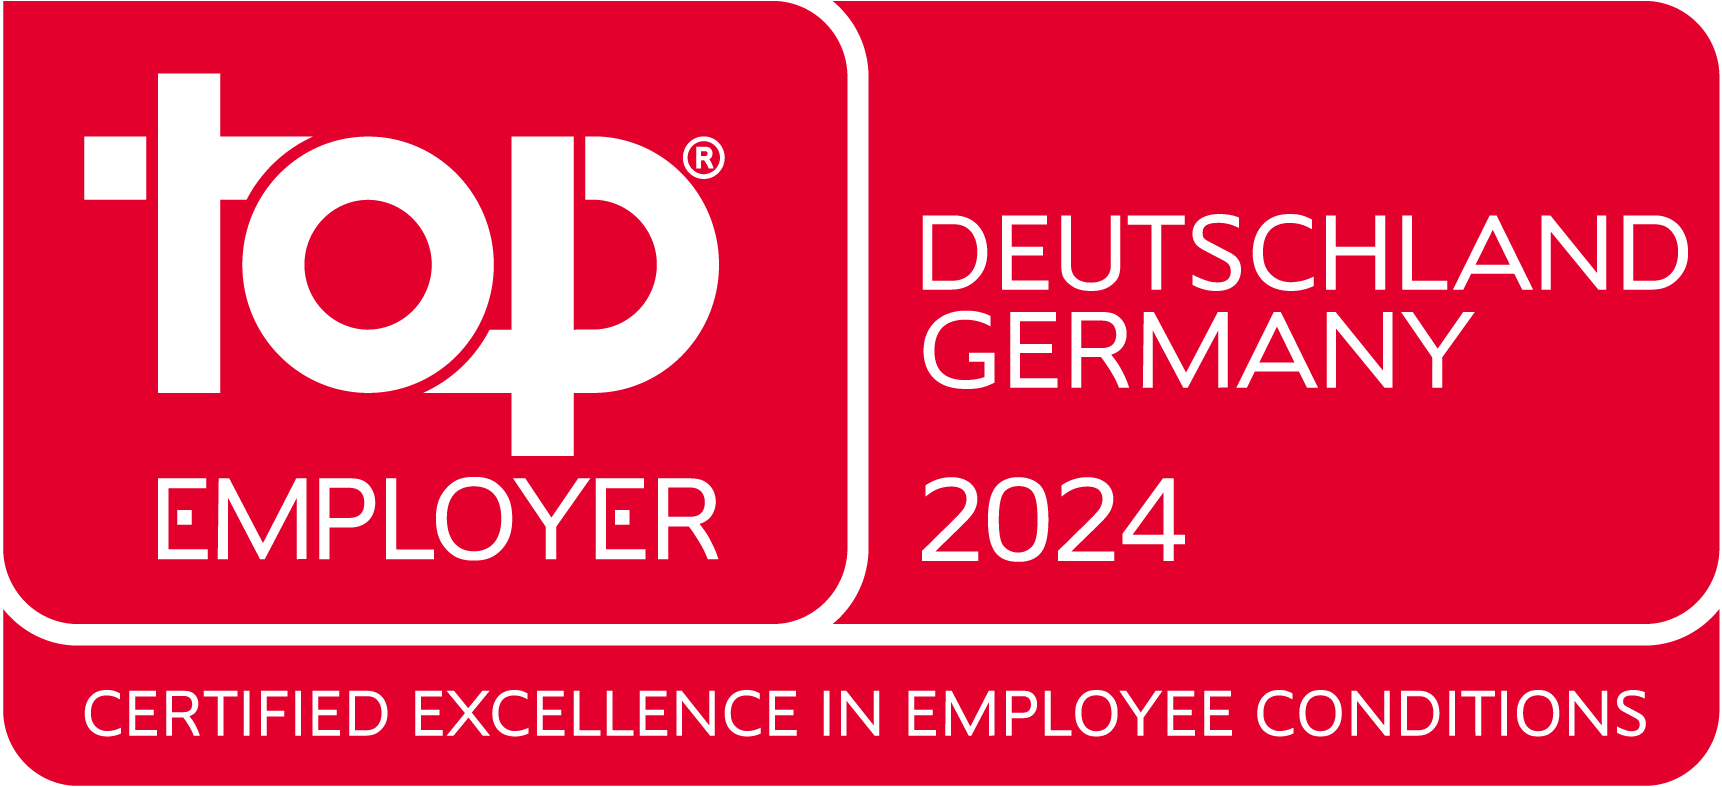 Top Employer - Deutschland